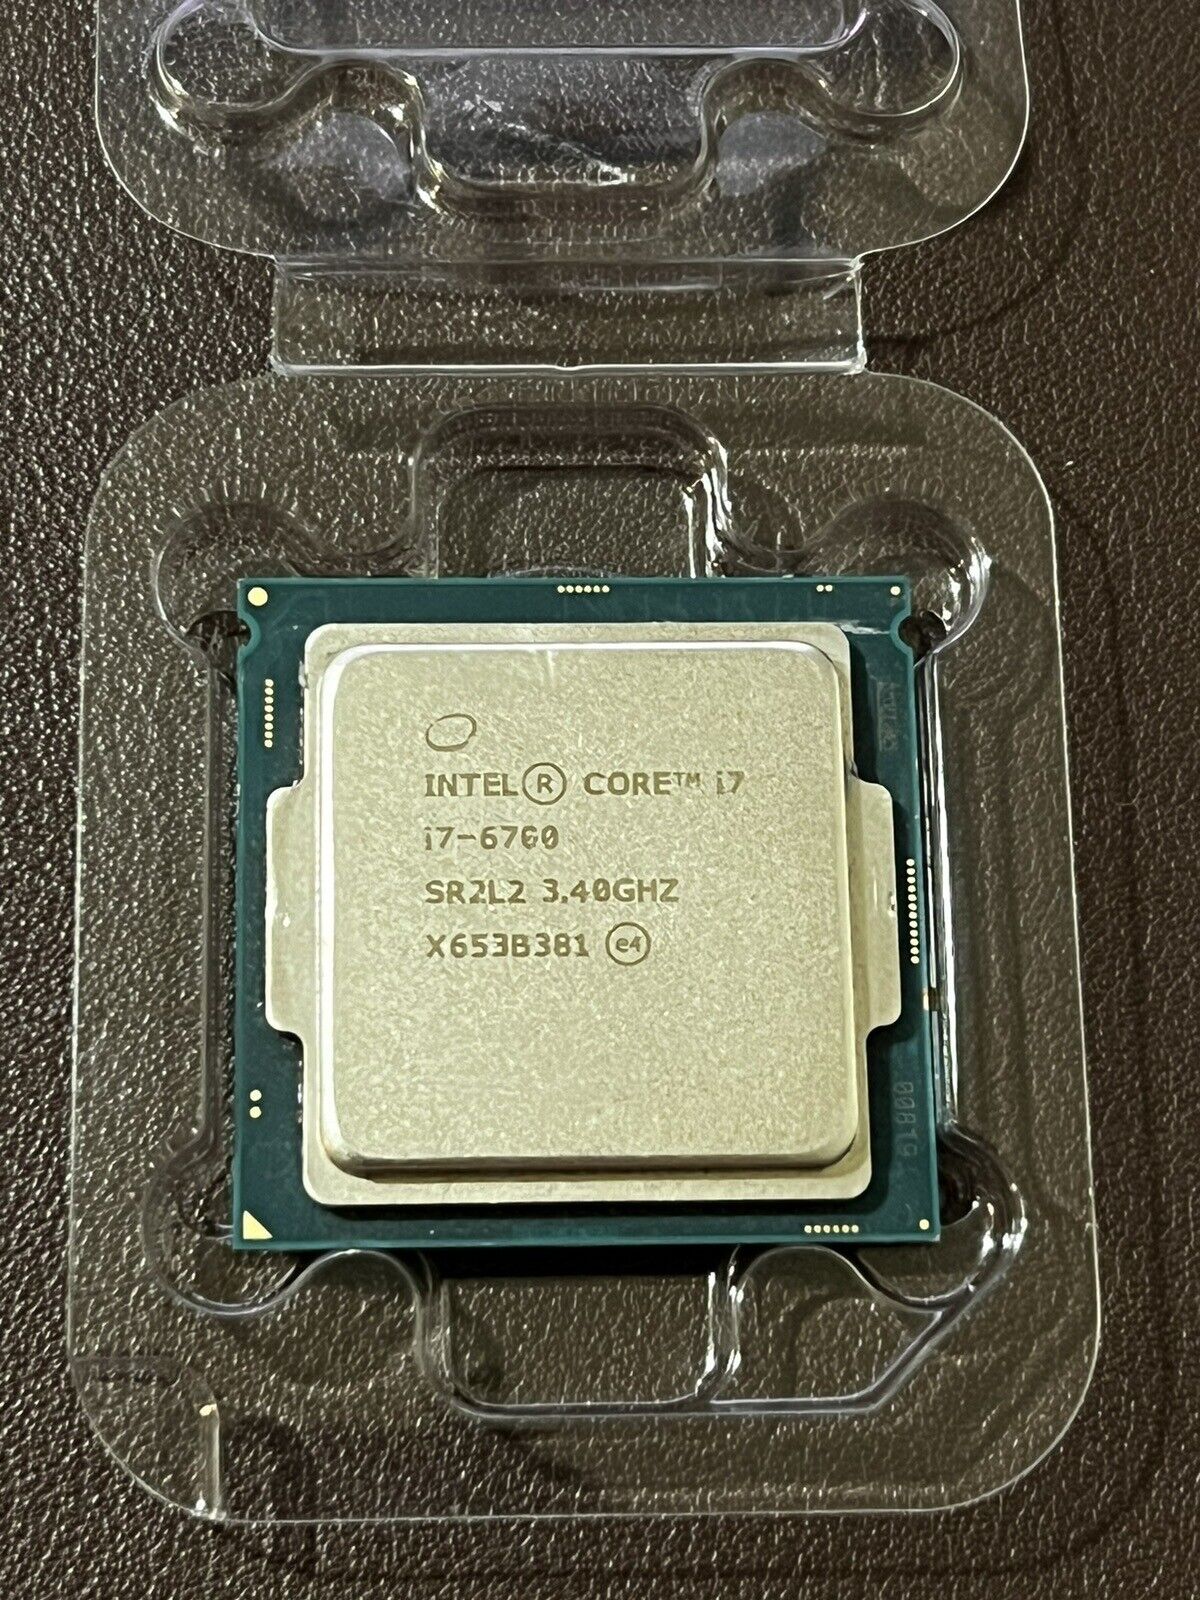 Intel Core i7-6700 CPU/Processor | 3.4GHz | Quad-Core | LGA 1151  SR2L2